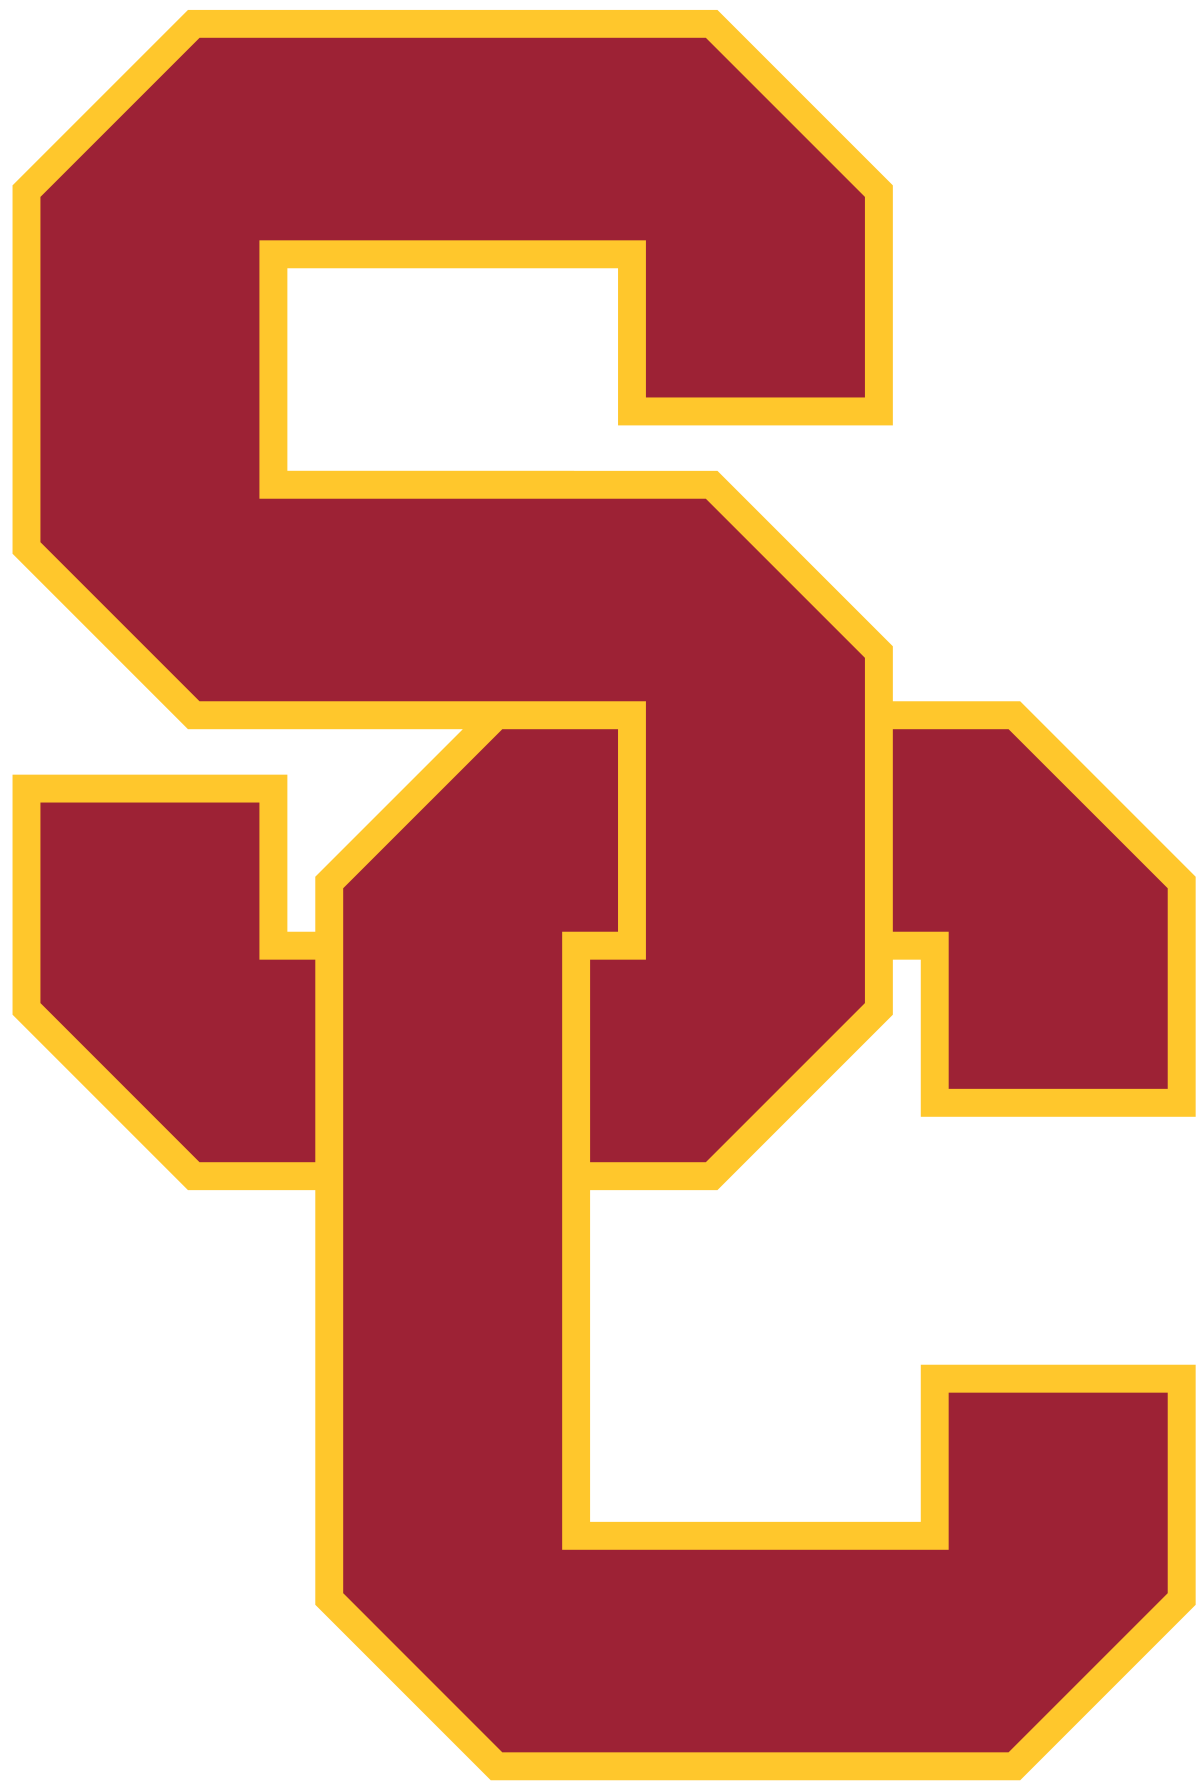 USC Trojans football - Wikipedia